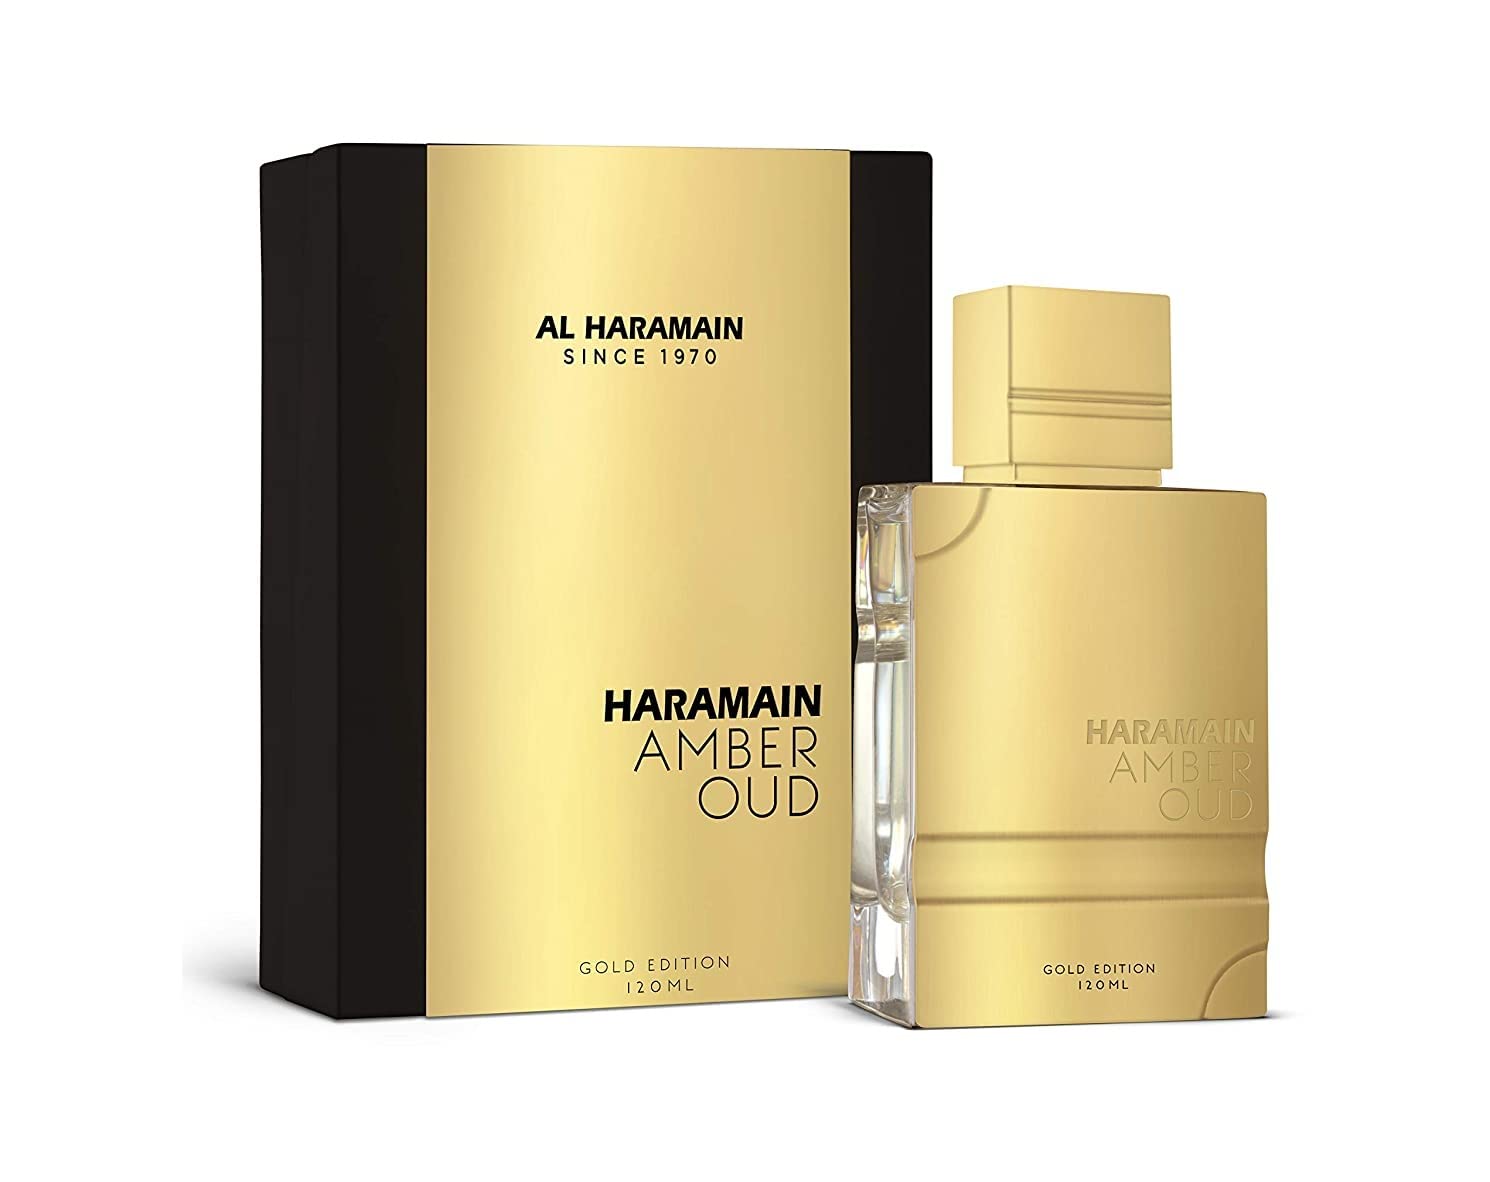 Al Haramain Amber Oud Edición Dorada Eau de Parfum Spra...